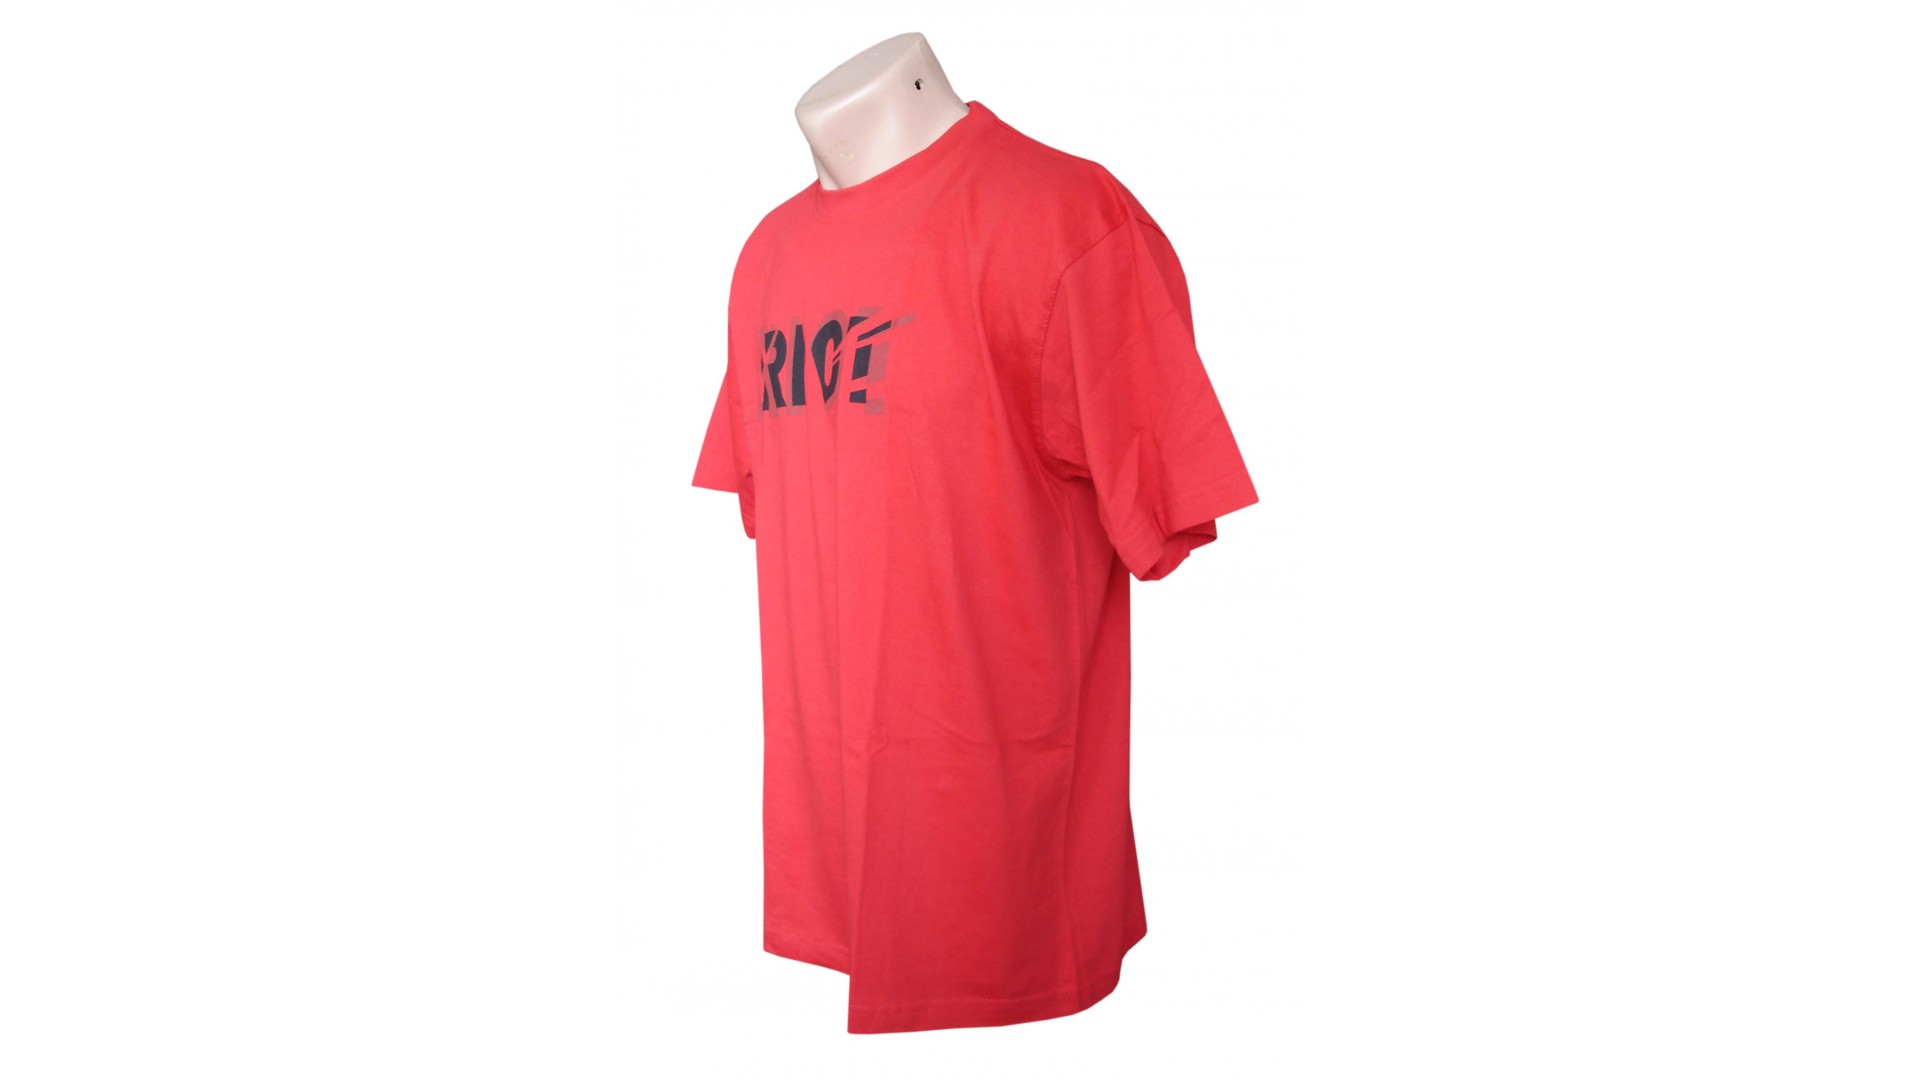 Футболка Ghost T-shirt red год 2015 вид сбоку